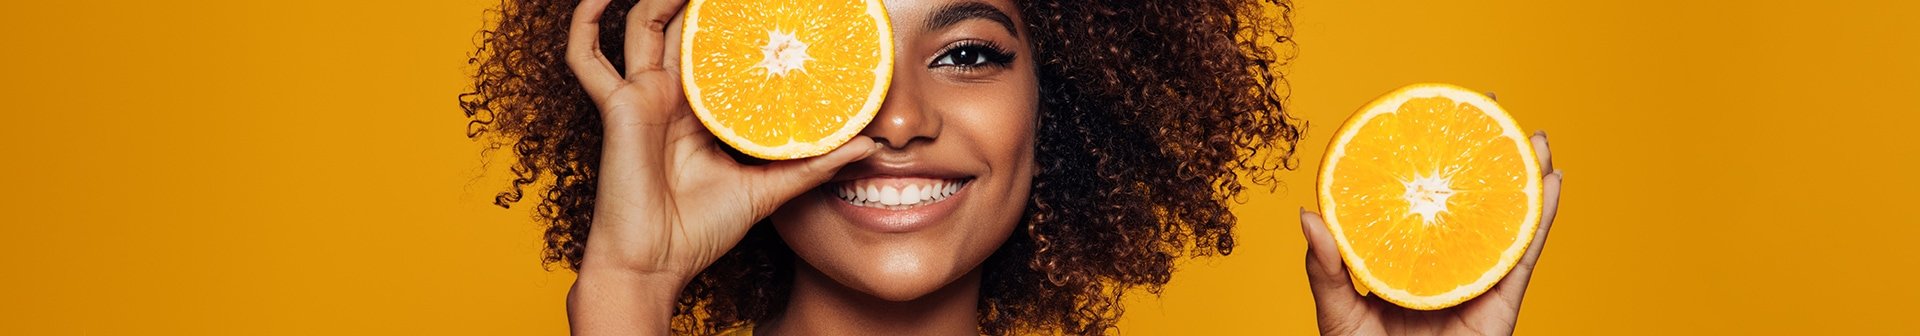 Gesicht einer Frau mit Orangen in der Hand